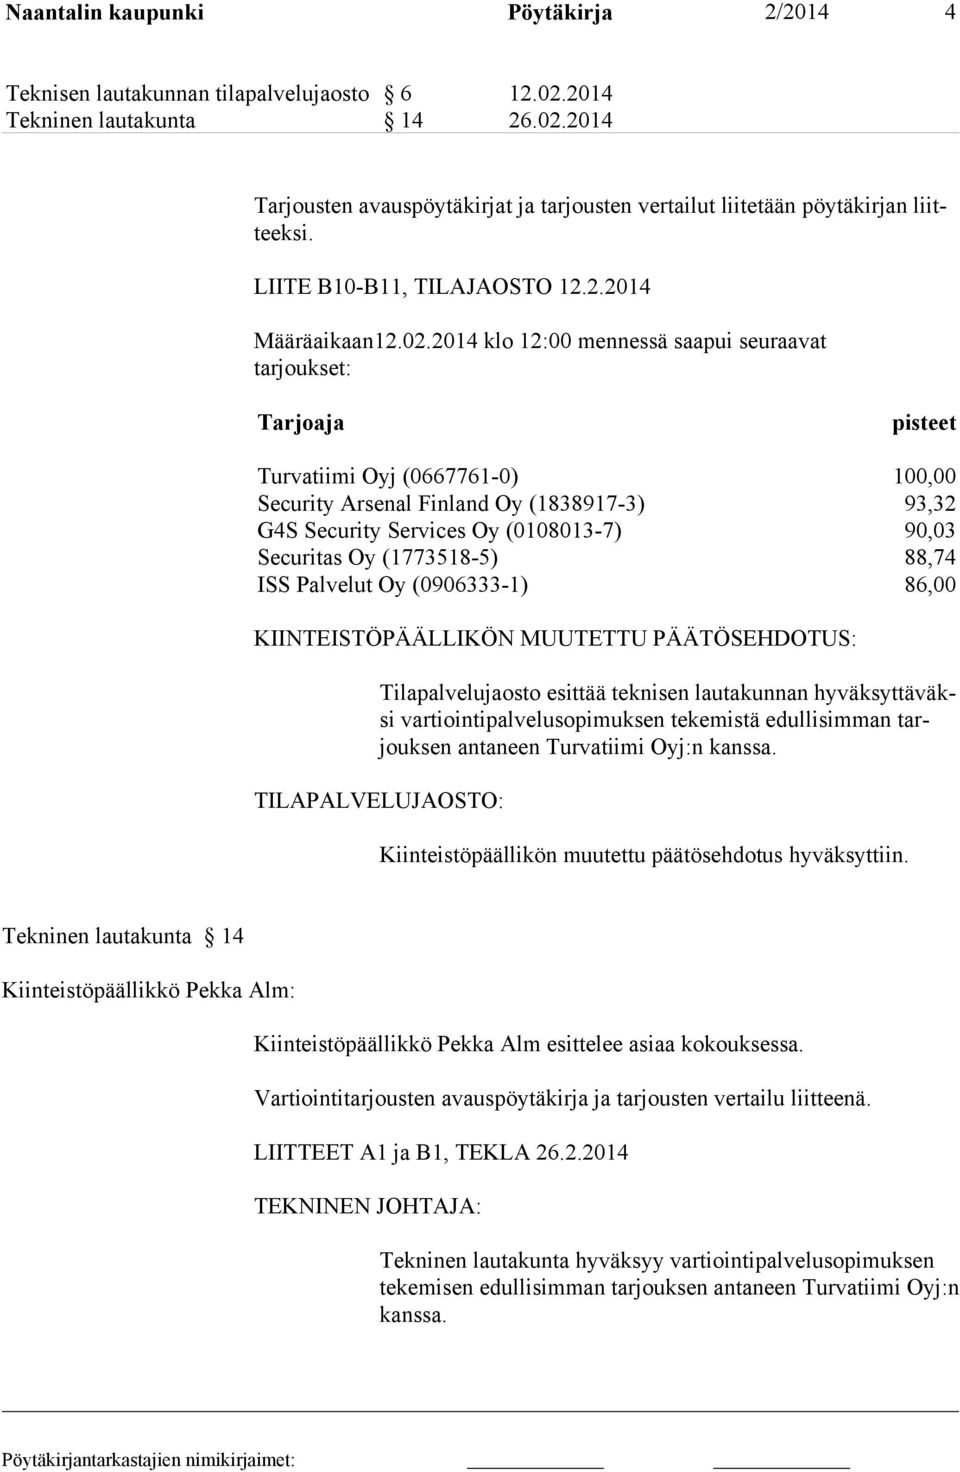 2014 klo 12:00 mennessä saapui seuraavat tarjoukset: Tarjoaja pisteet Turvatiimi Oyj (0667761-0) 100,00 Security Arsenal Finland Oy (1838917-3) 93,32 G4S Security Services Oy (0108013-7) 90,03